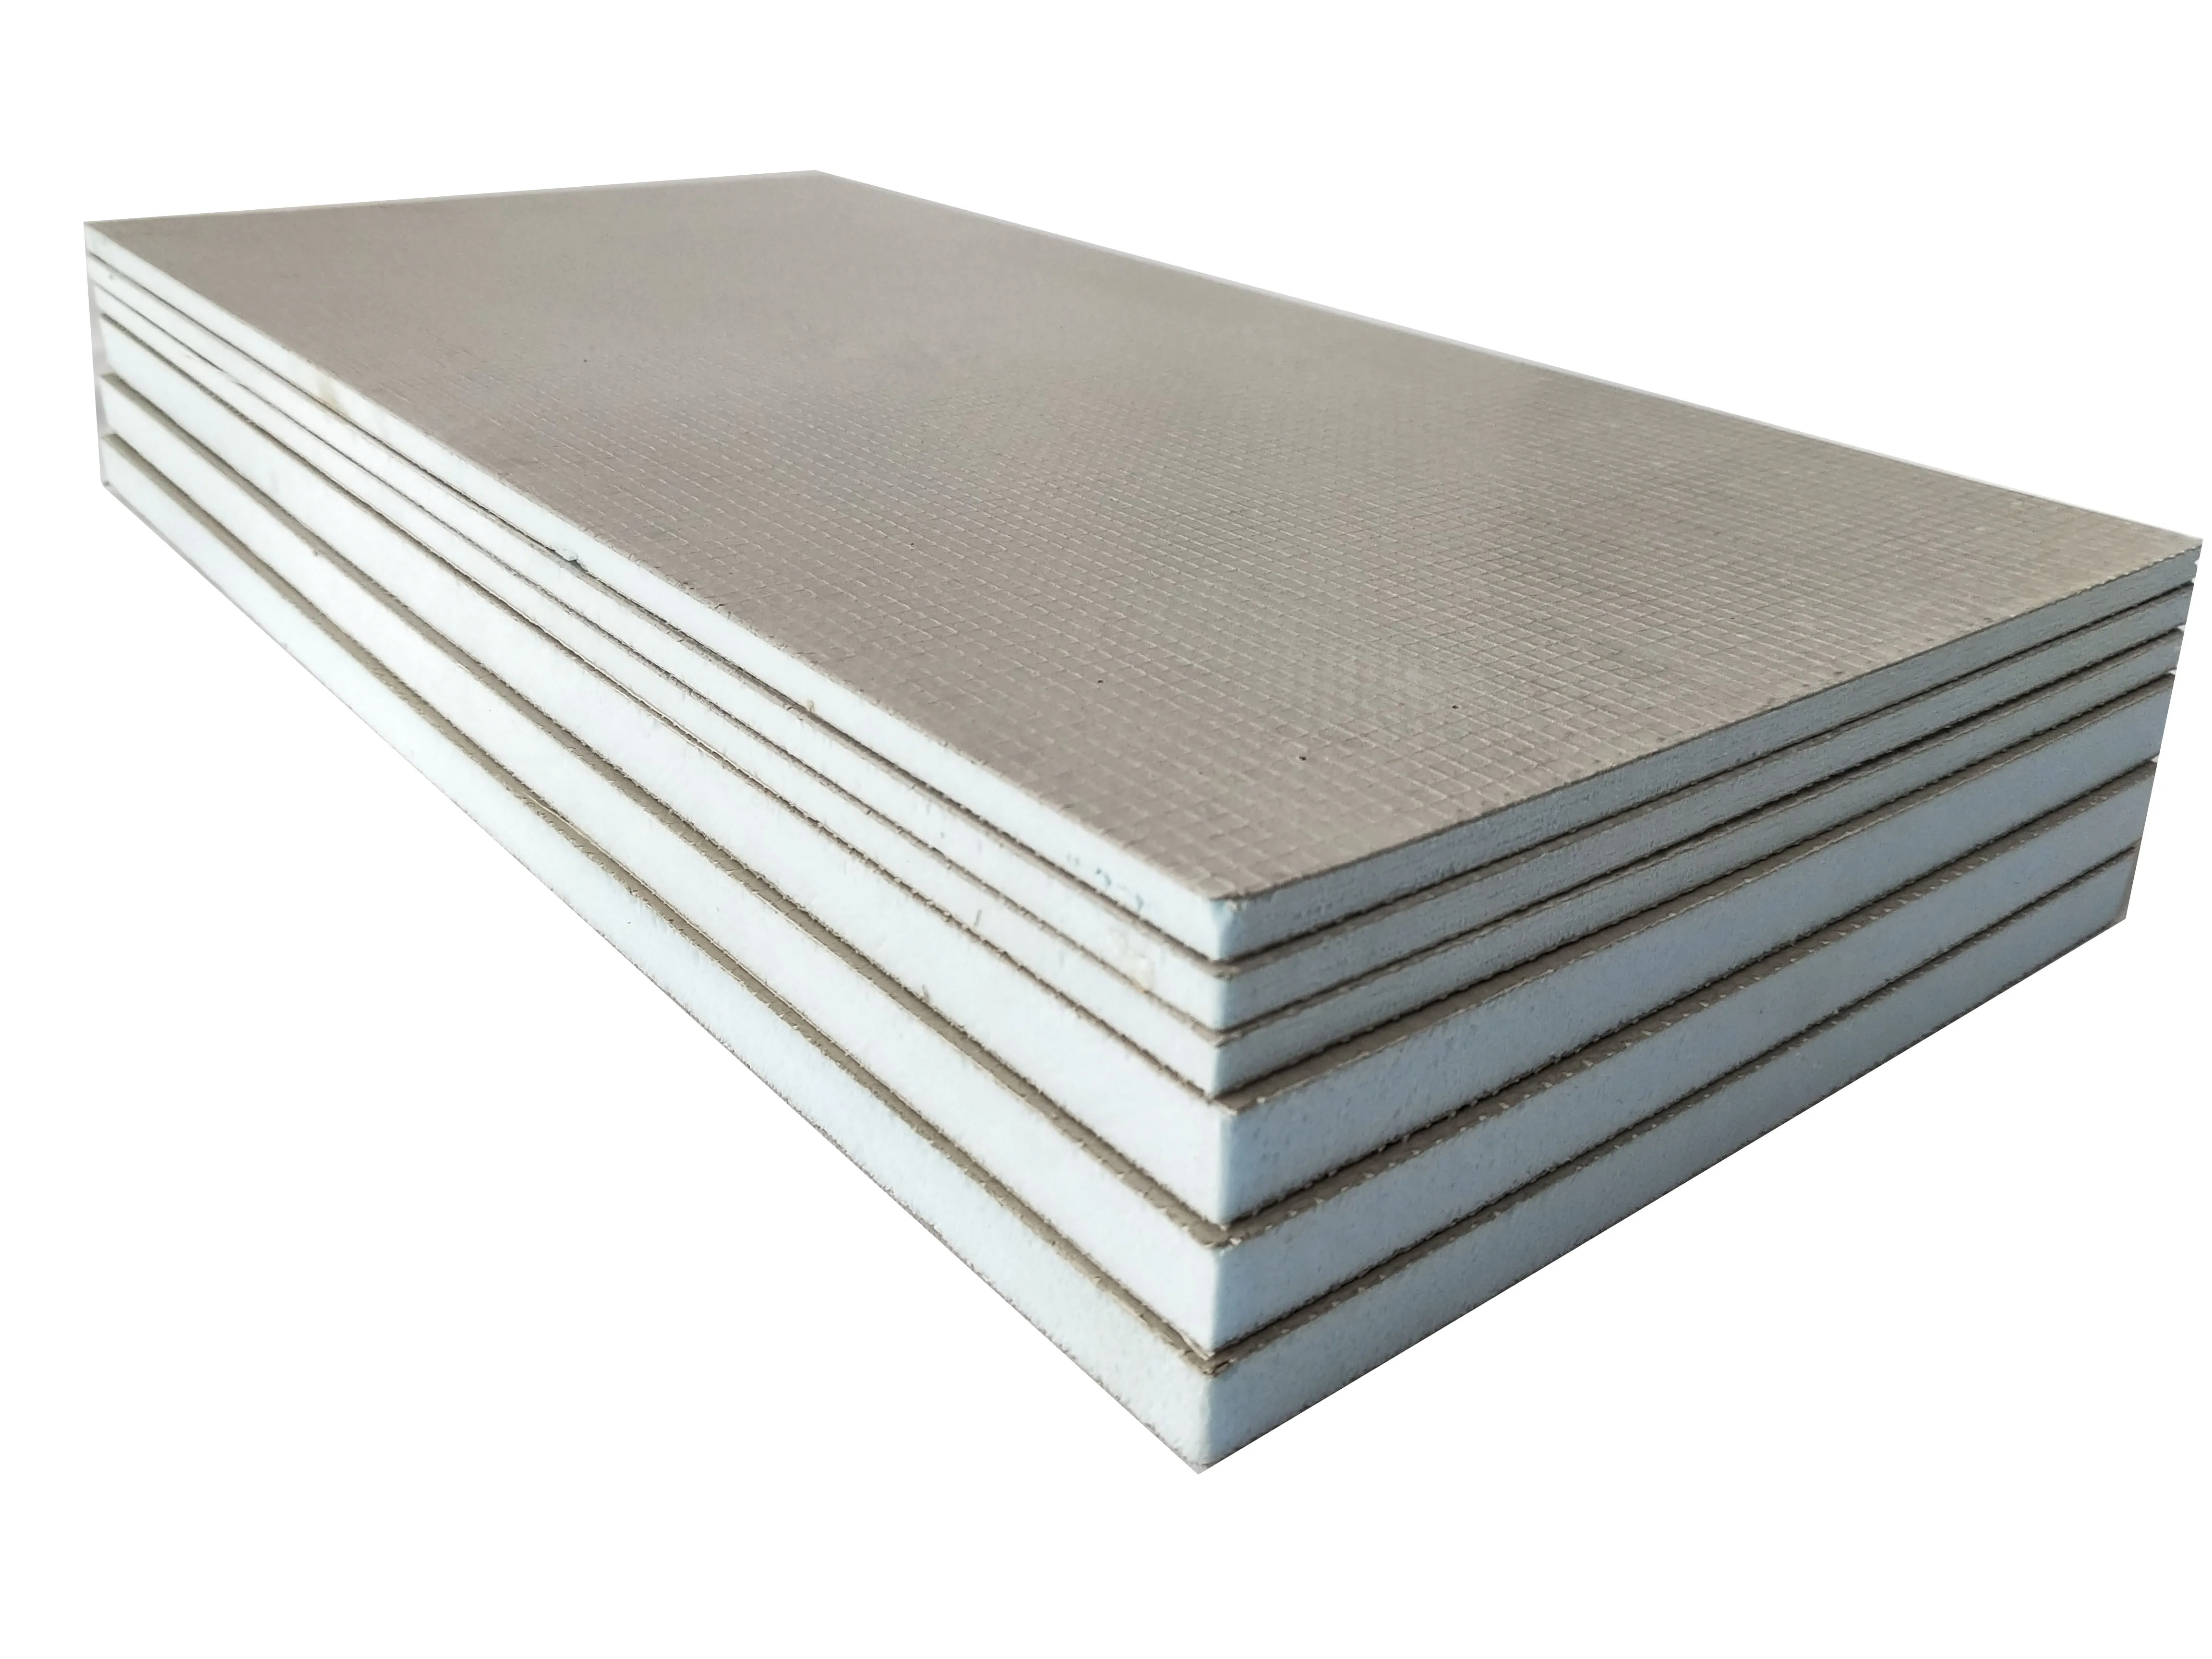 Xps Waterproof Insulation Cement Foam Board - Buy Waterproof Insulation